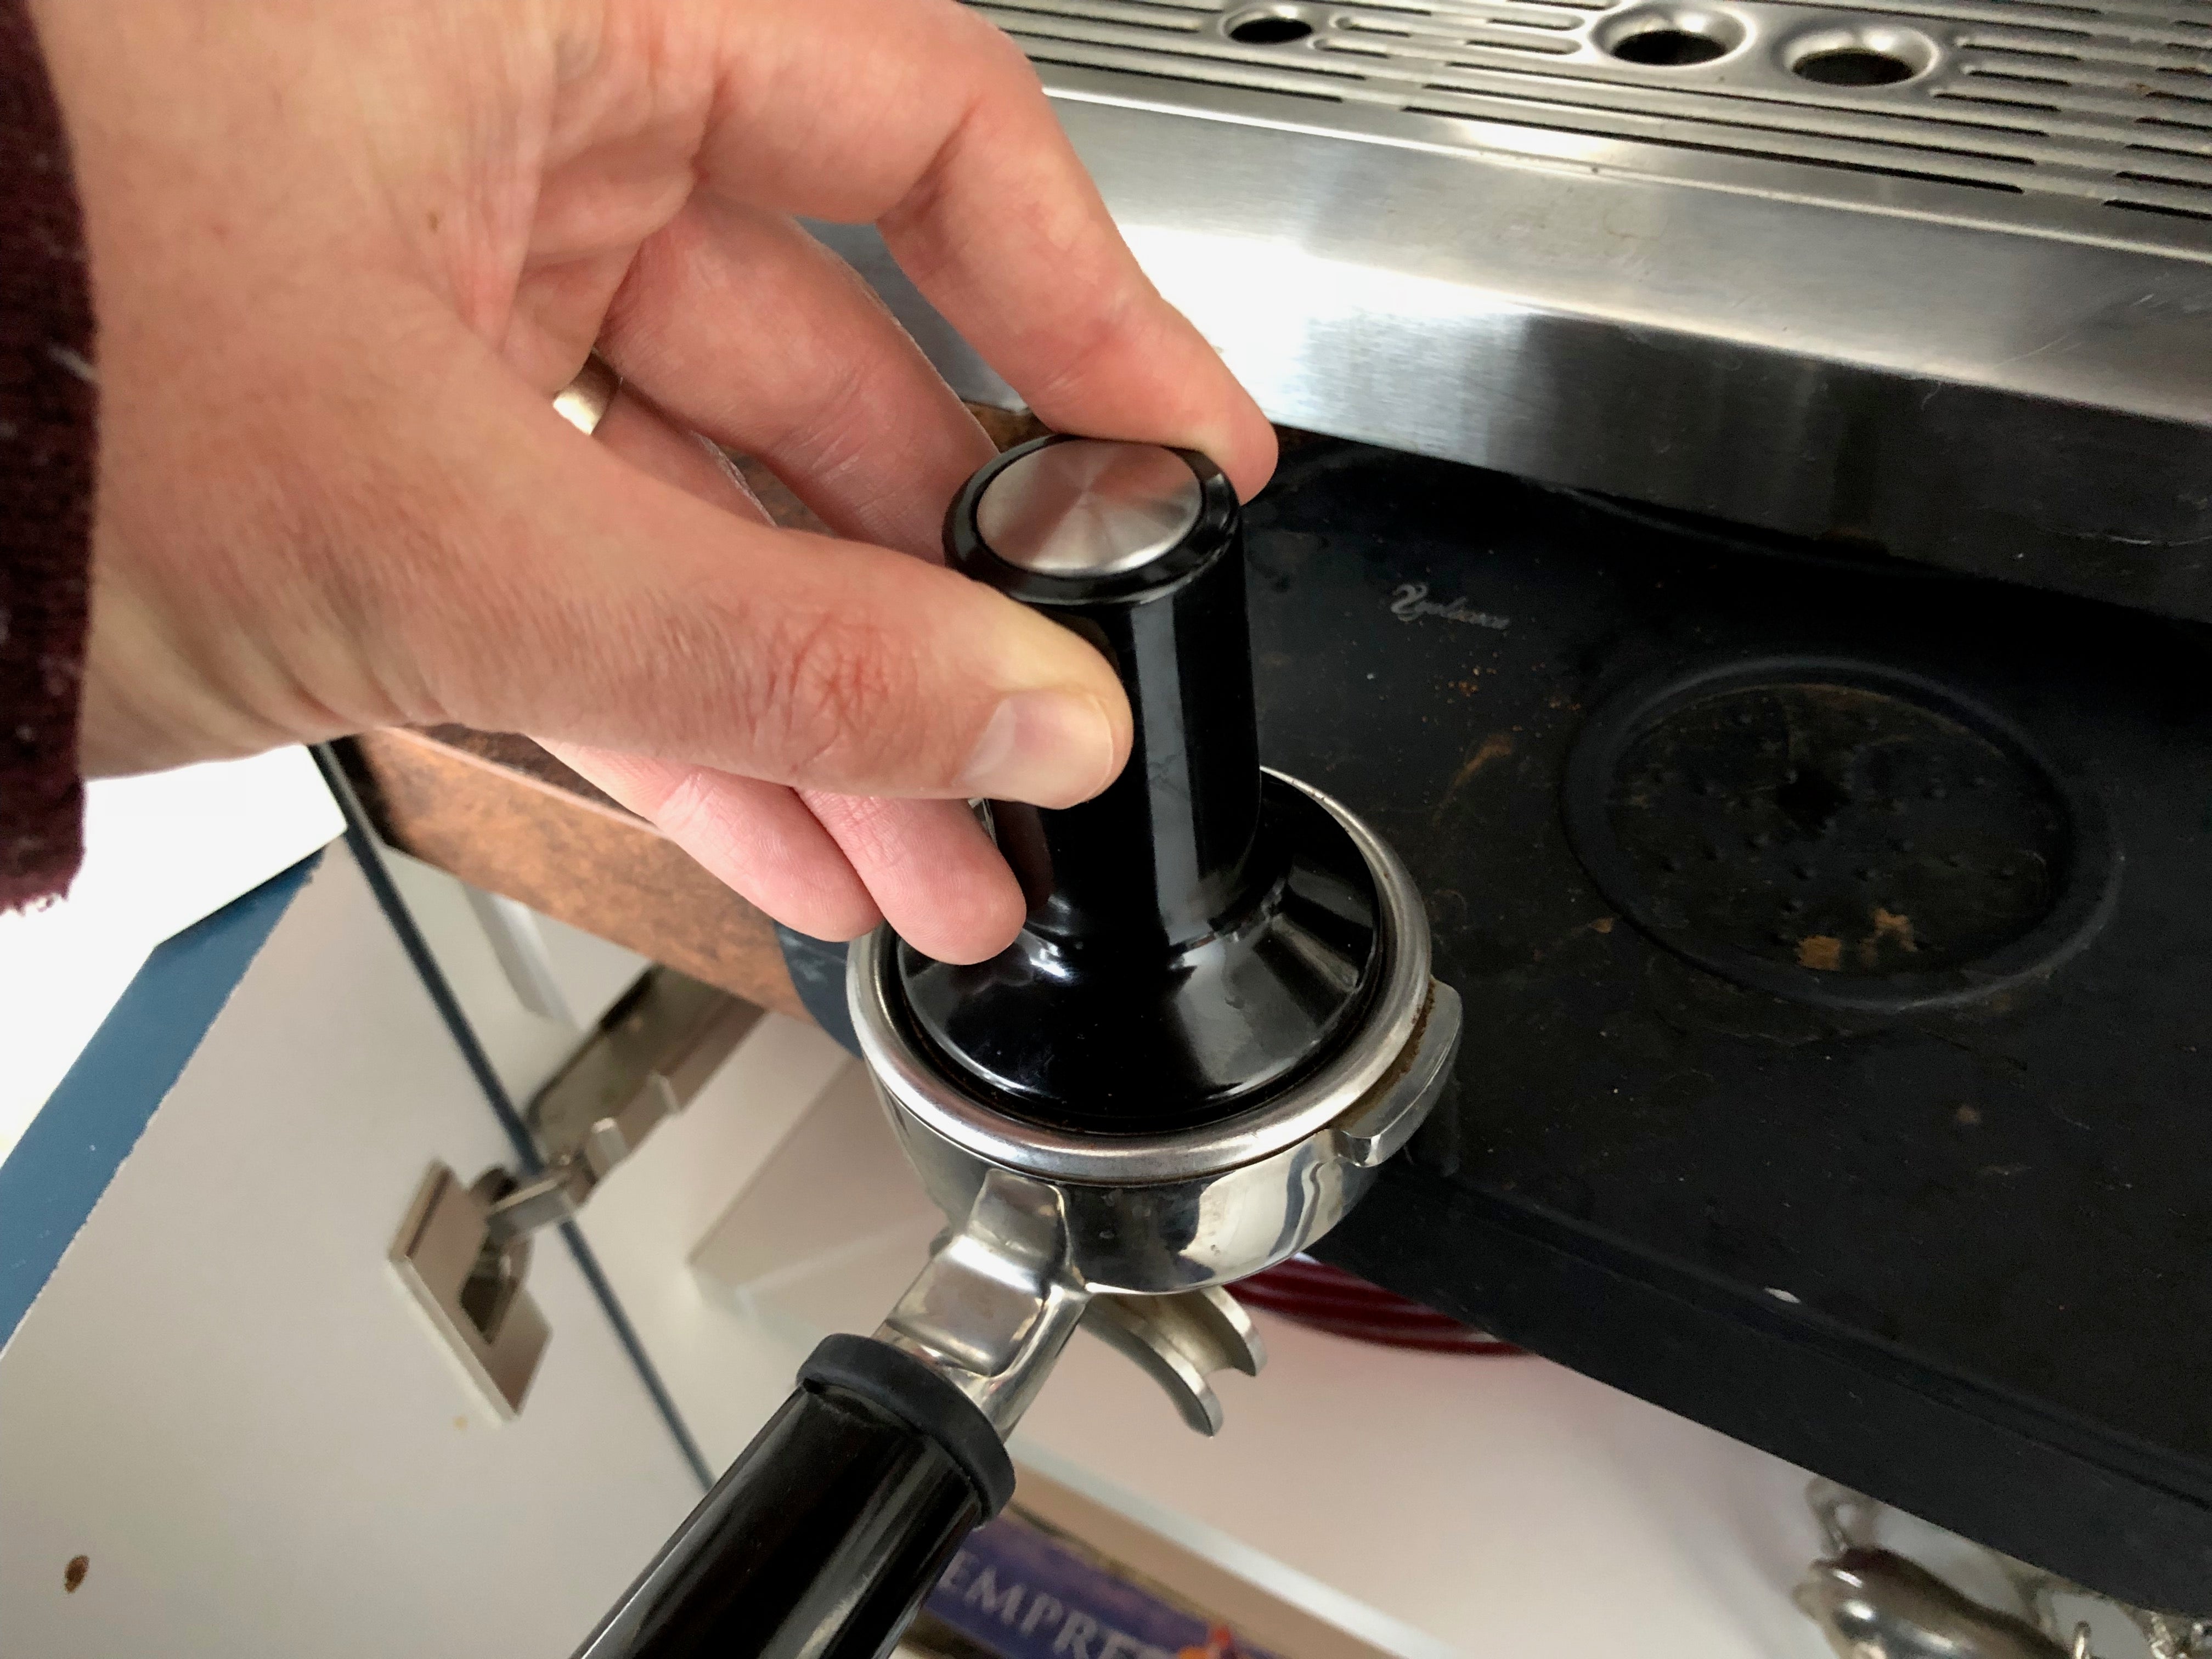 Tamping espresso